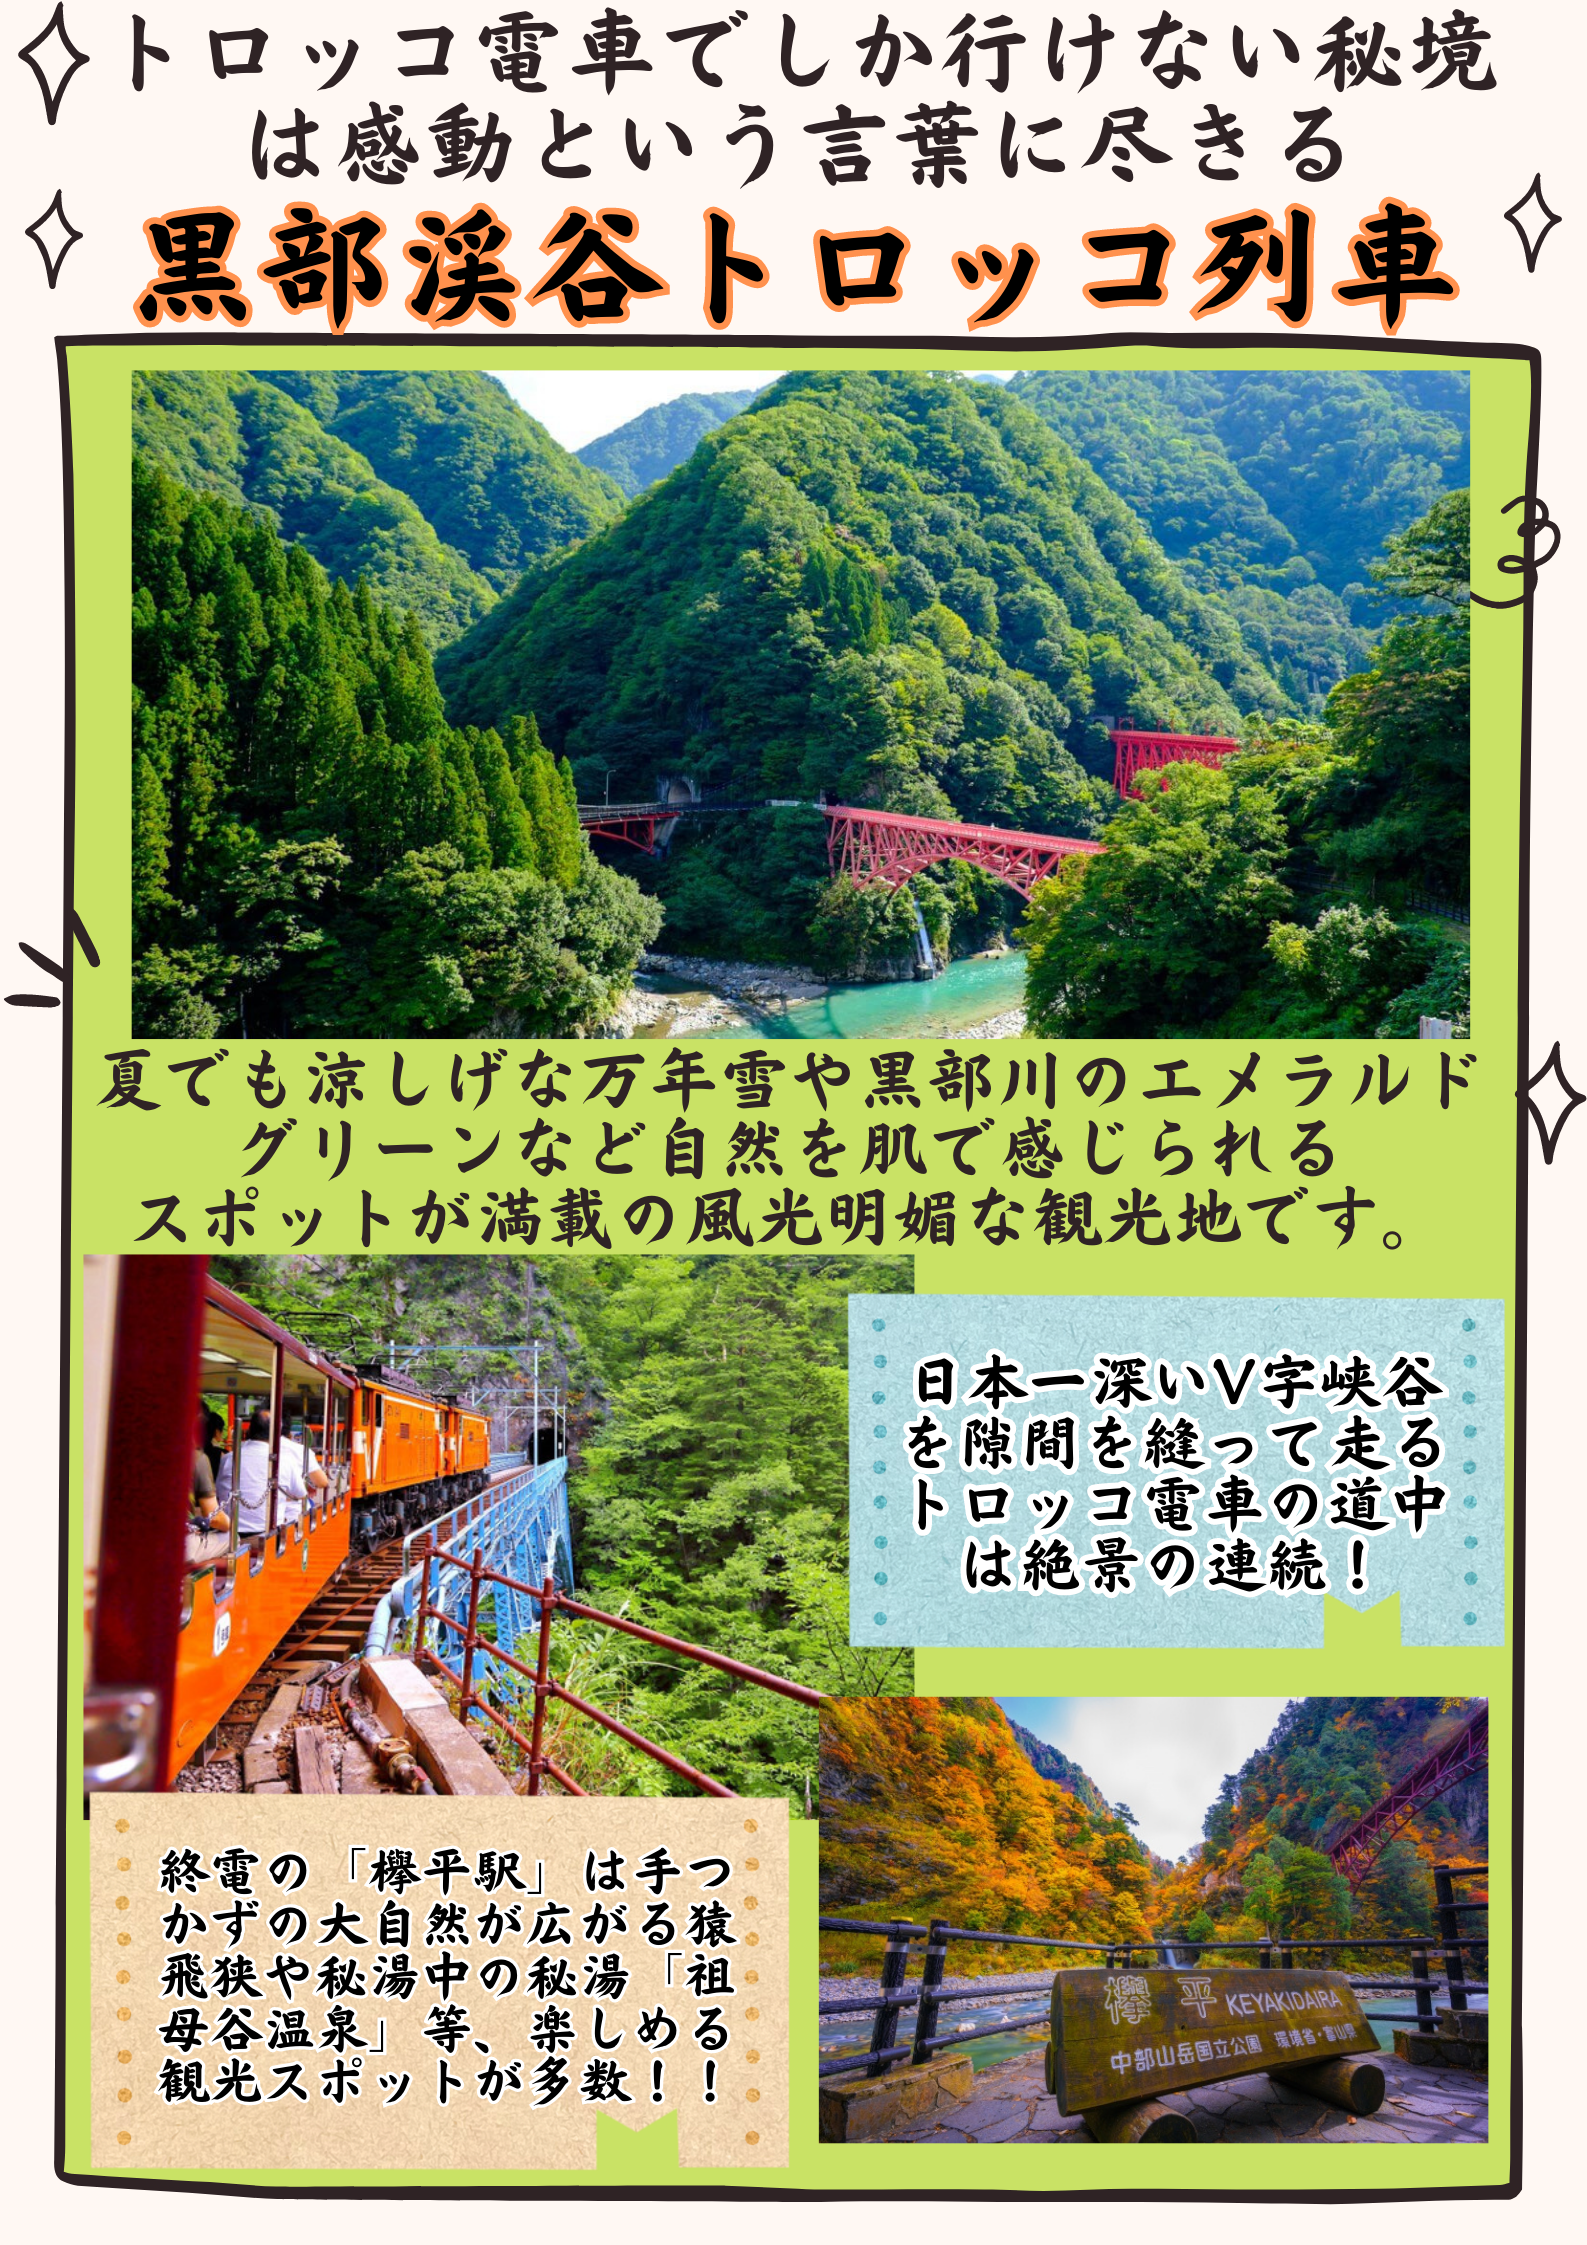 黒部峡谷鉄道トロッコ列車(イメージ)